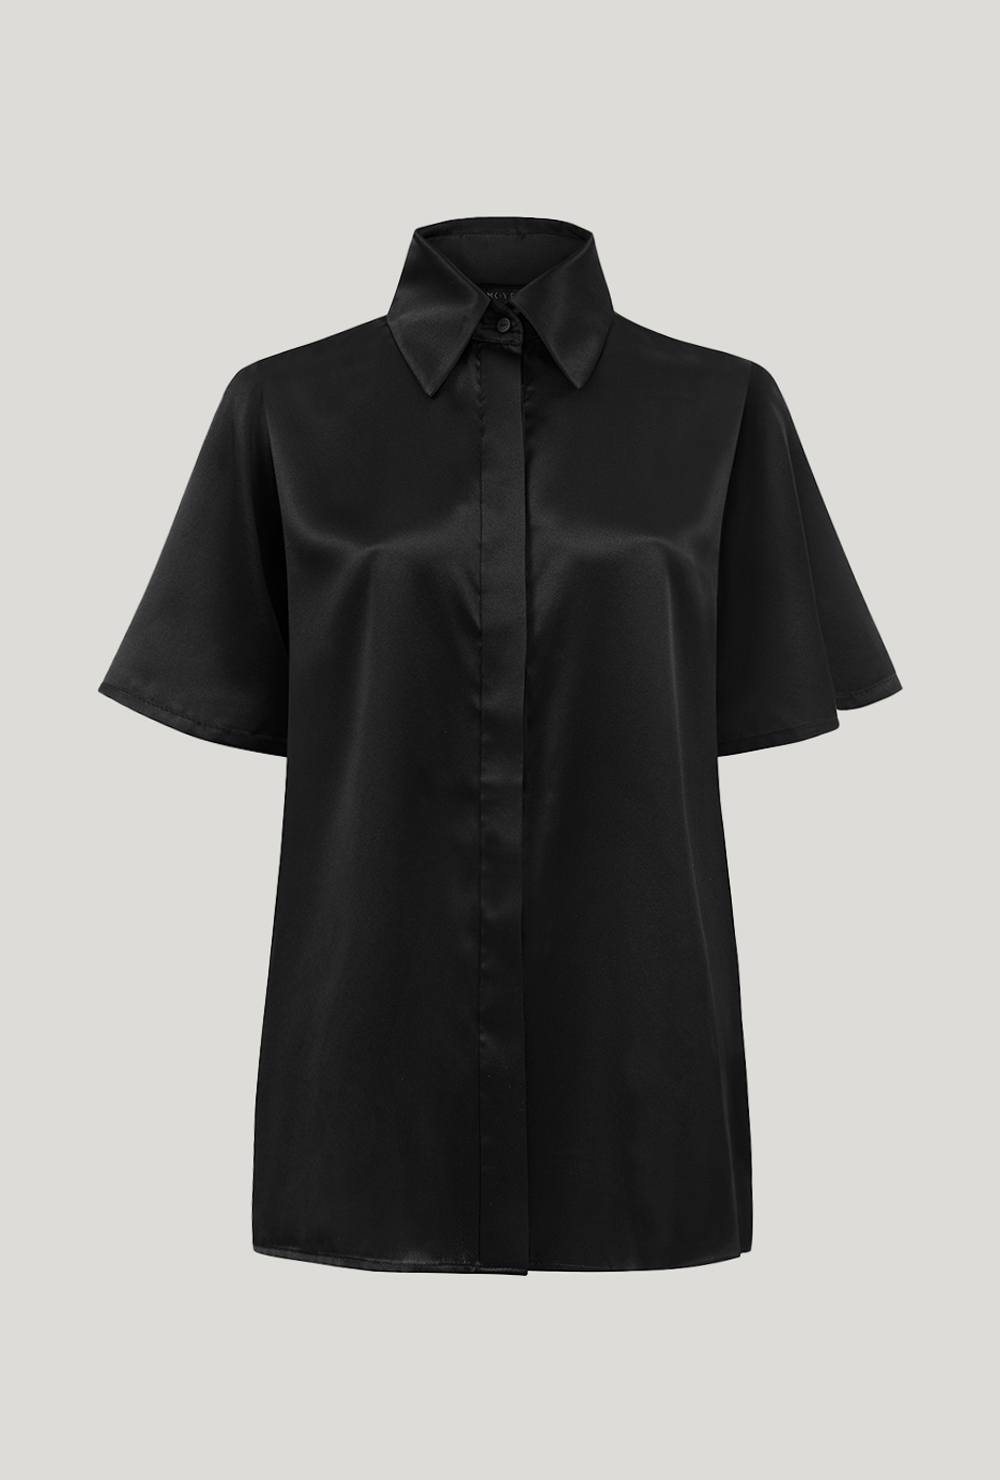 Black silk shirt with short sleeves Czarna jedwabna koszula z krótkimi rękawami